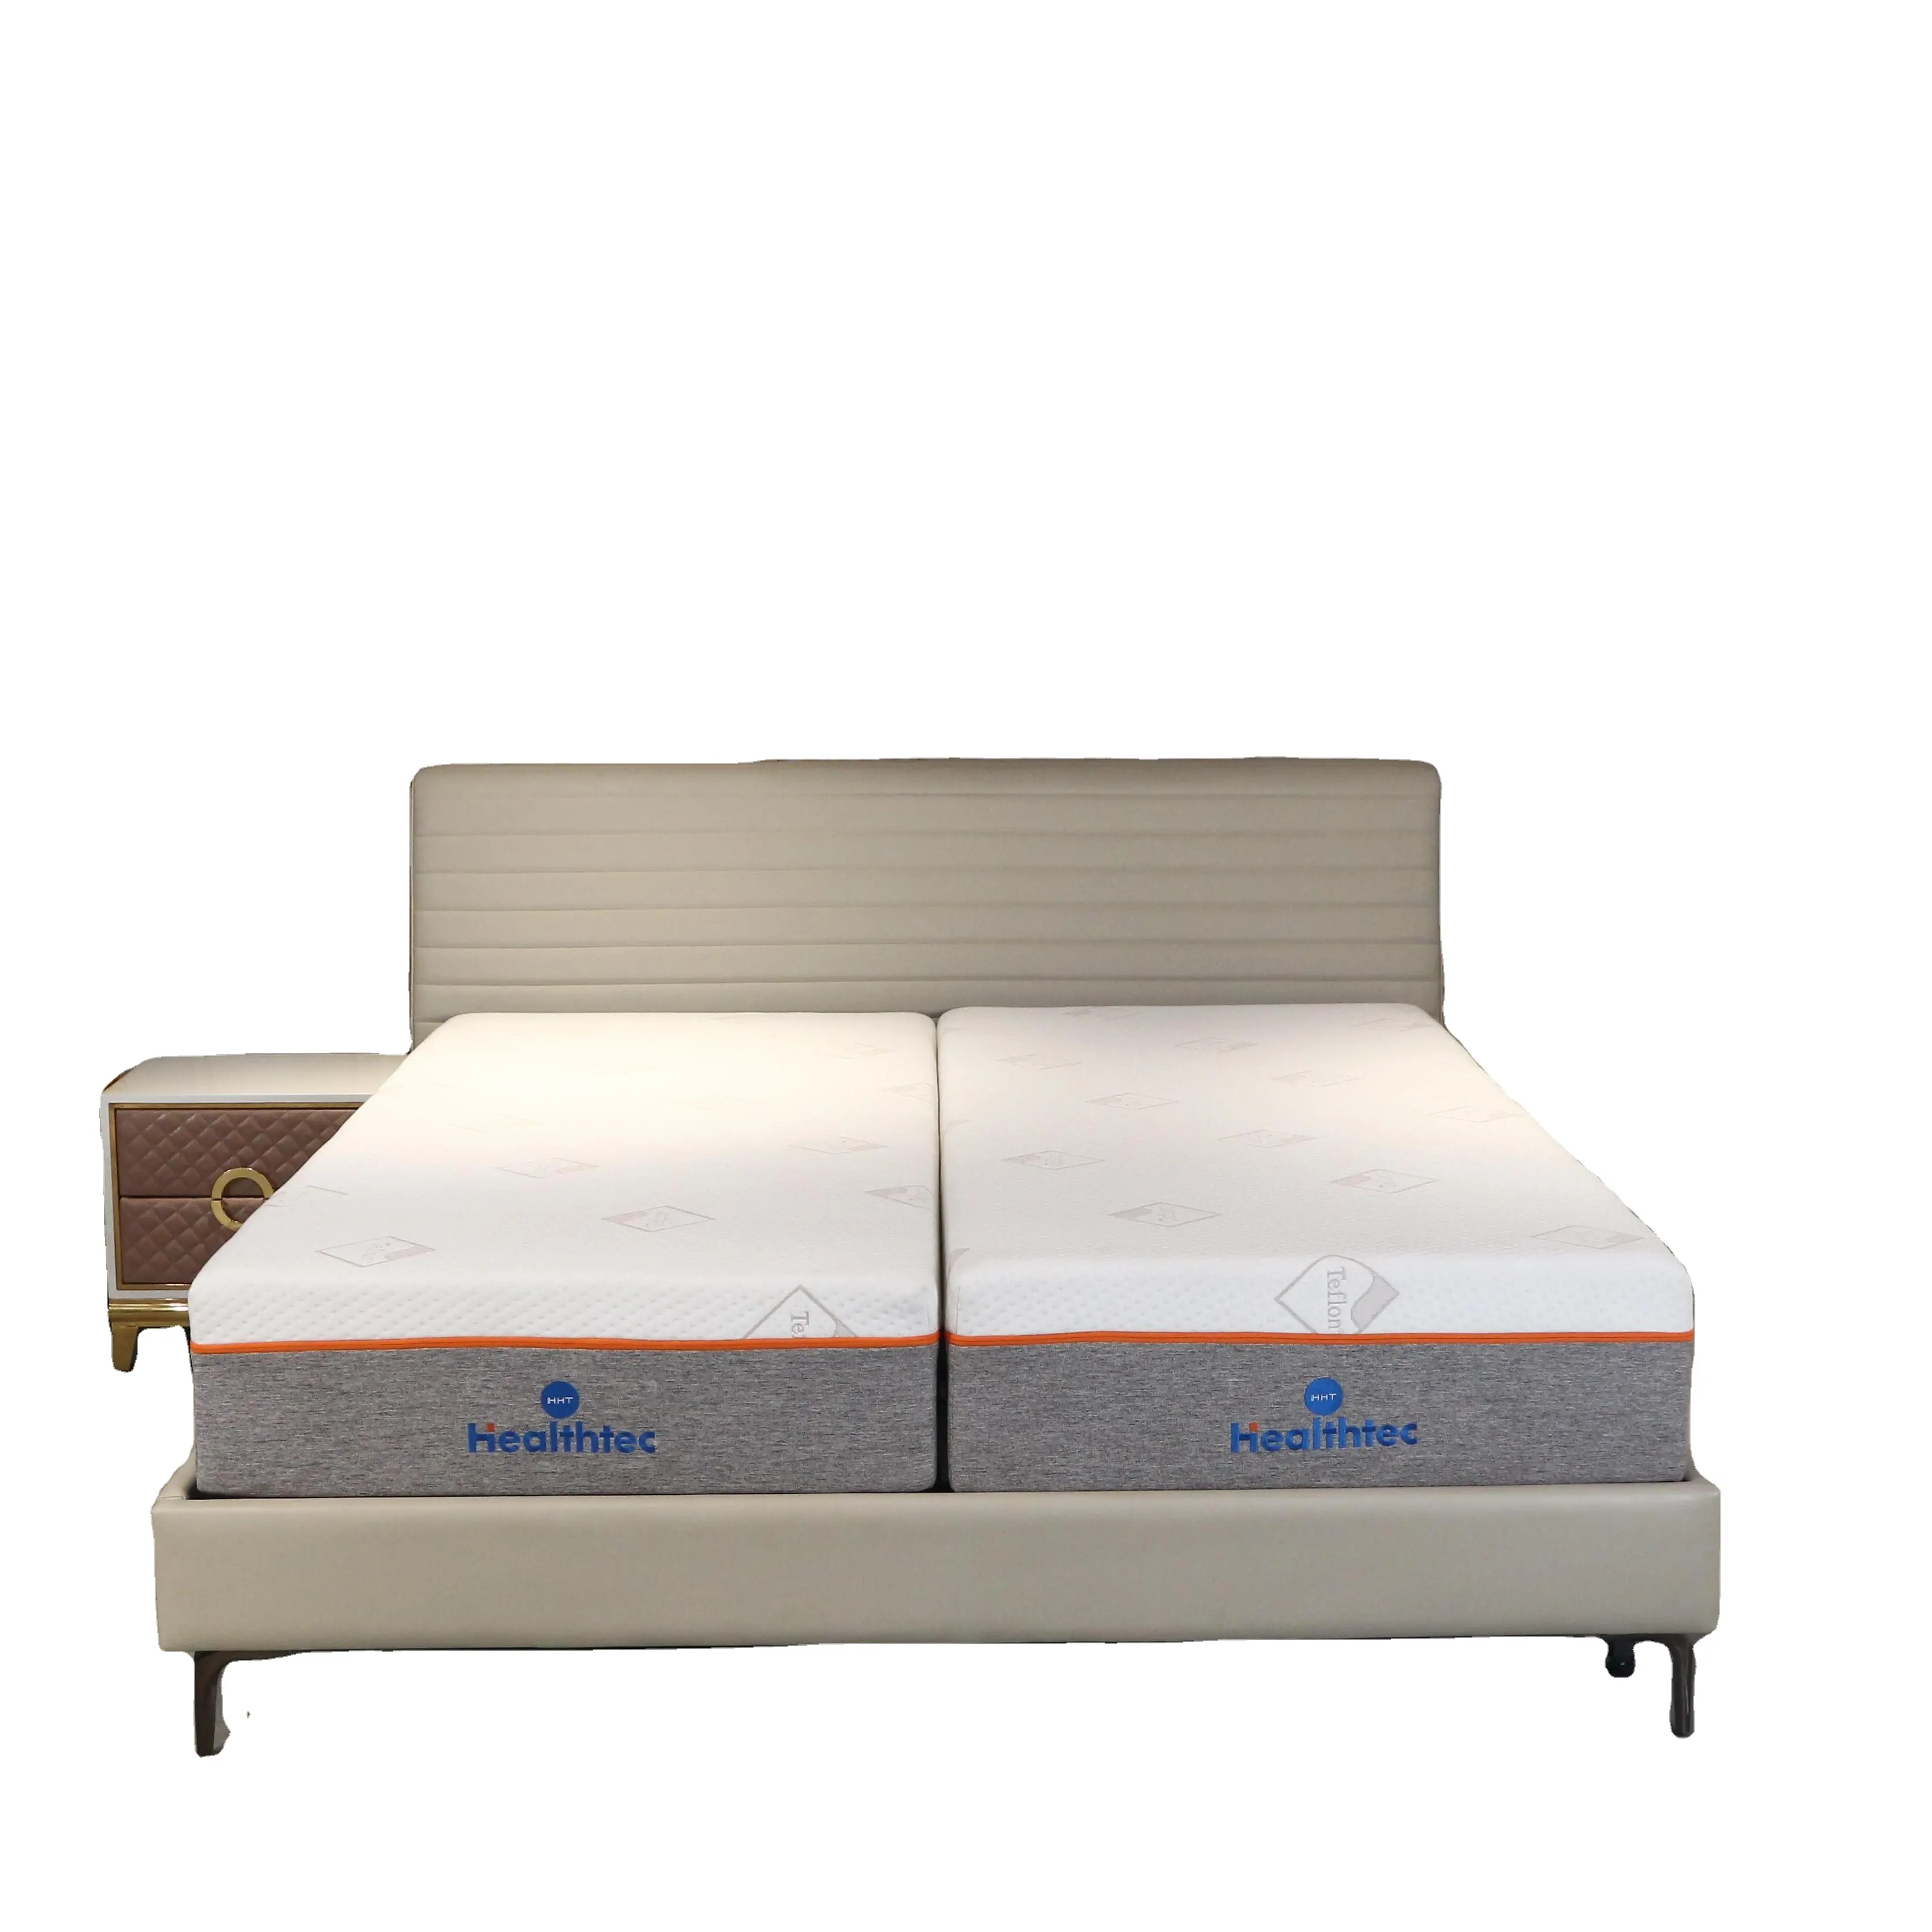 Cama ajustable eléctrica integrada de estilo moderno tamaño king dividida personalizada, cama de diseño oculto con colchón